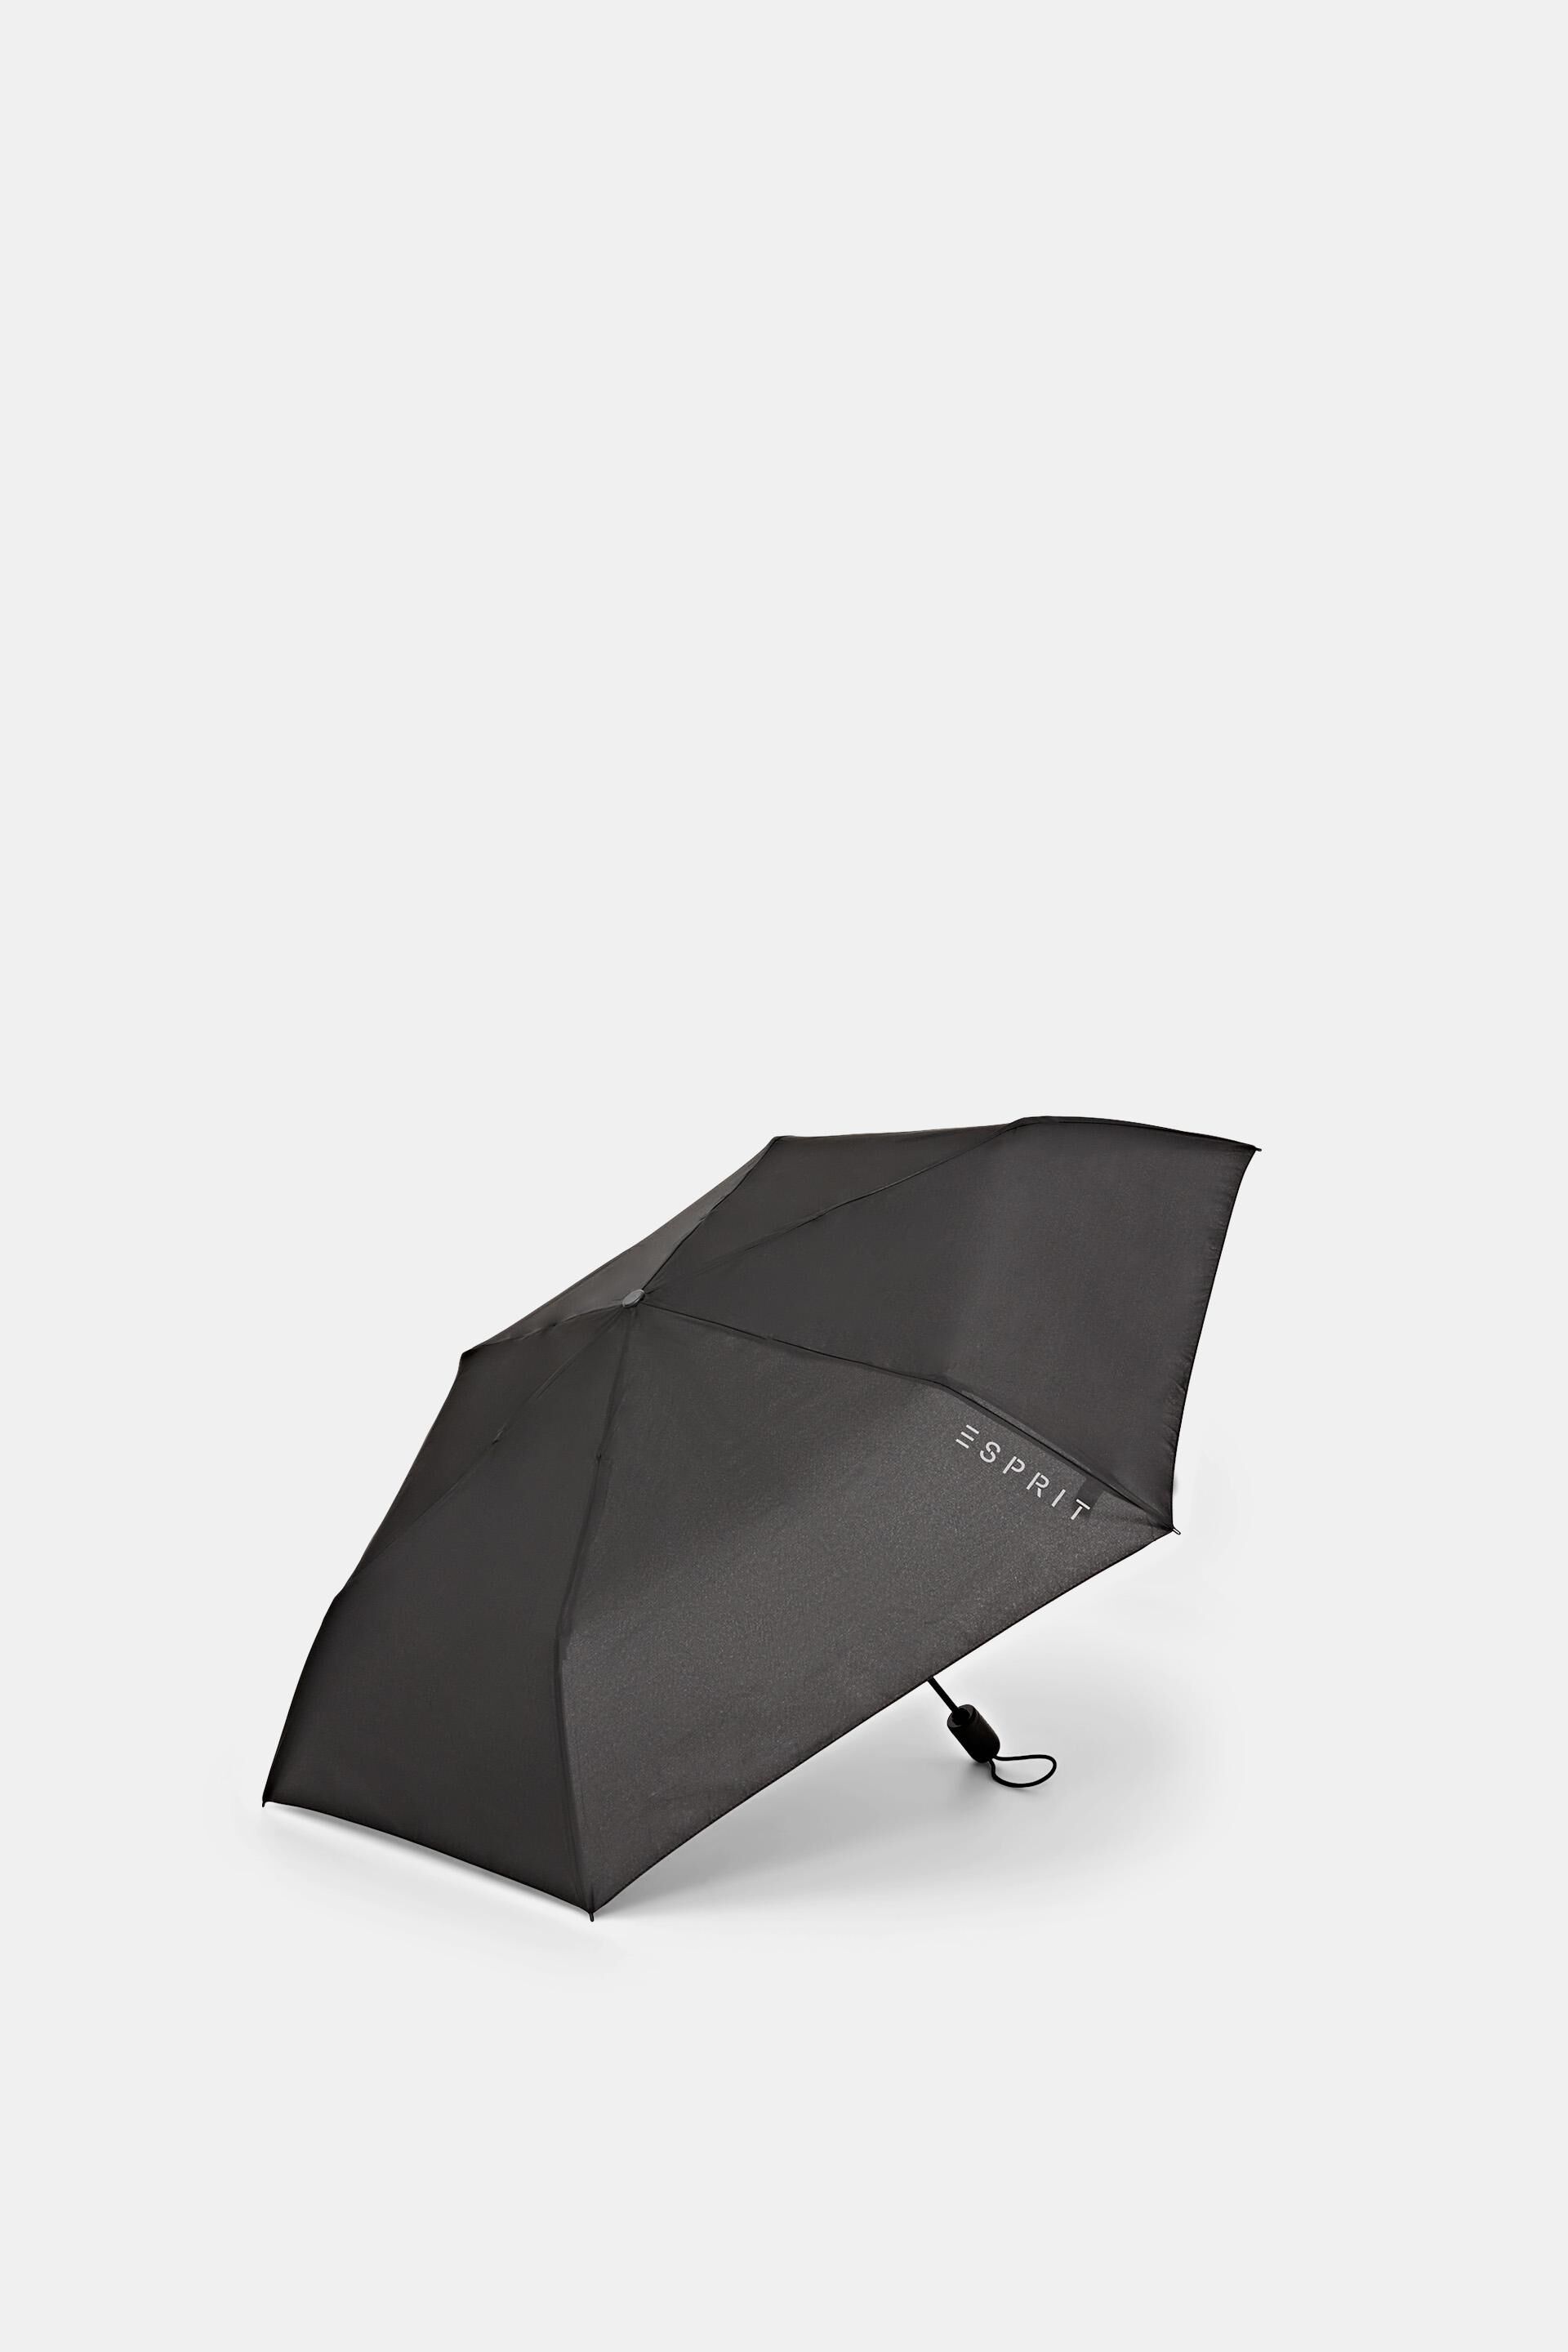 Easymatic slimline pocket umbrella in black at our online shop - ESPRIT